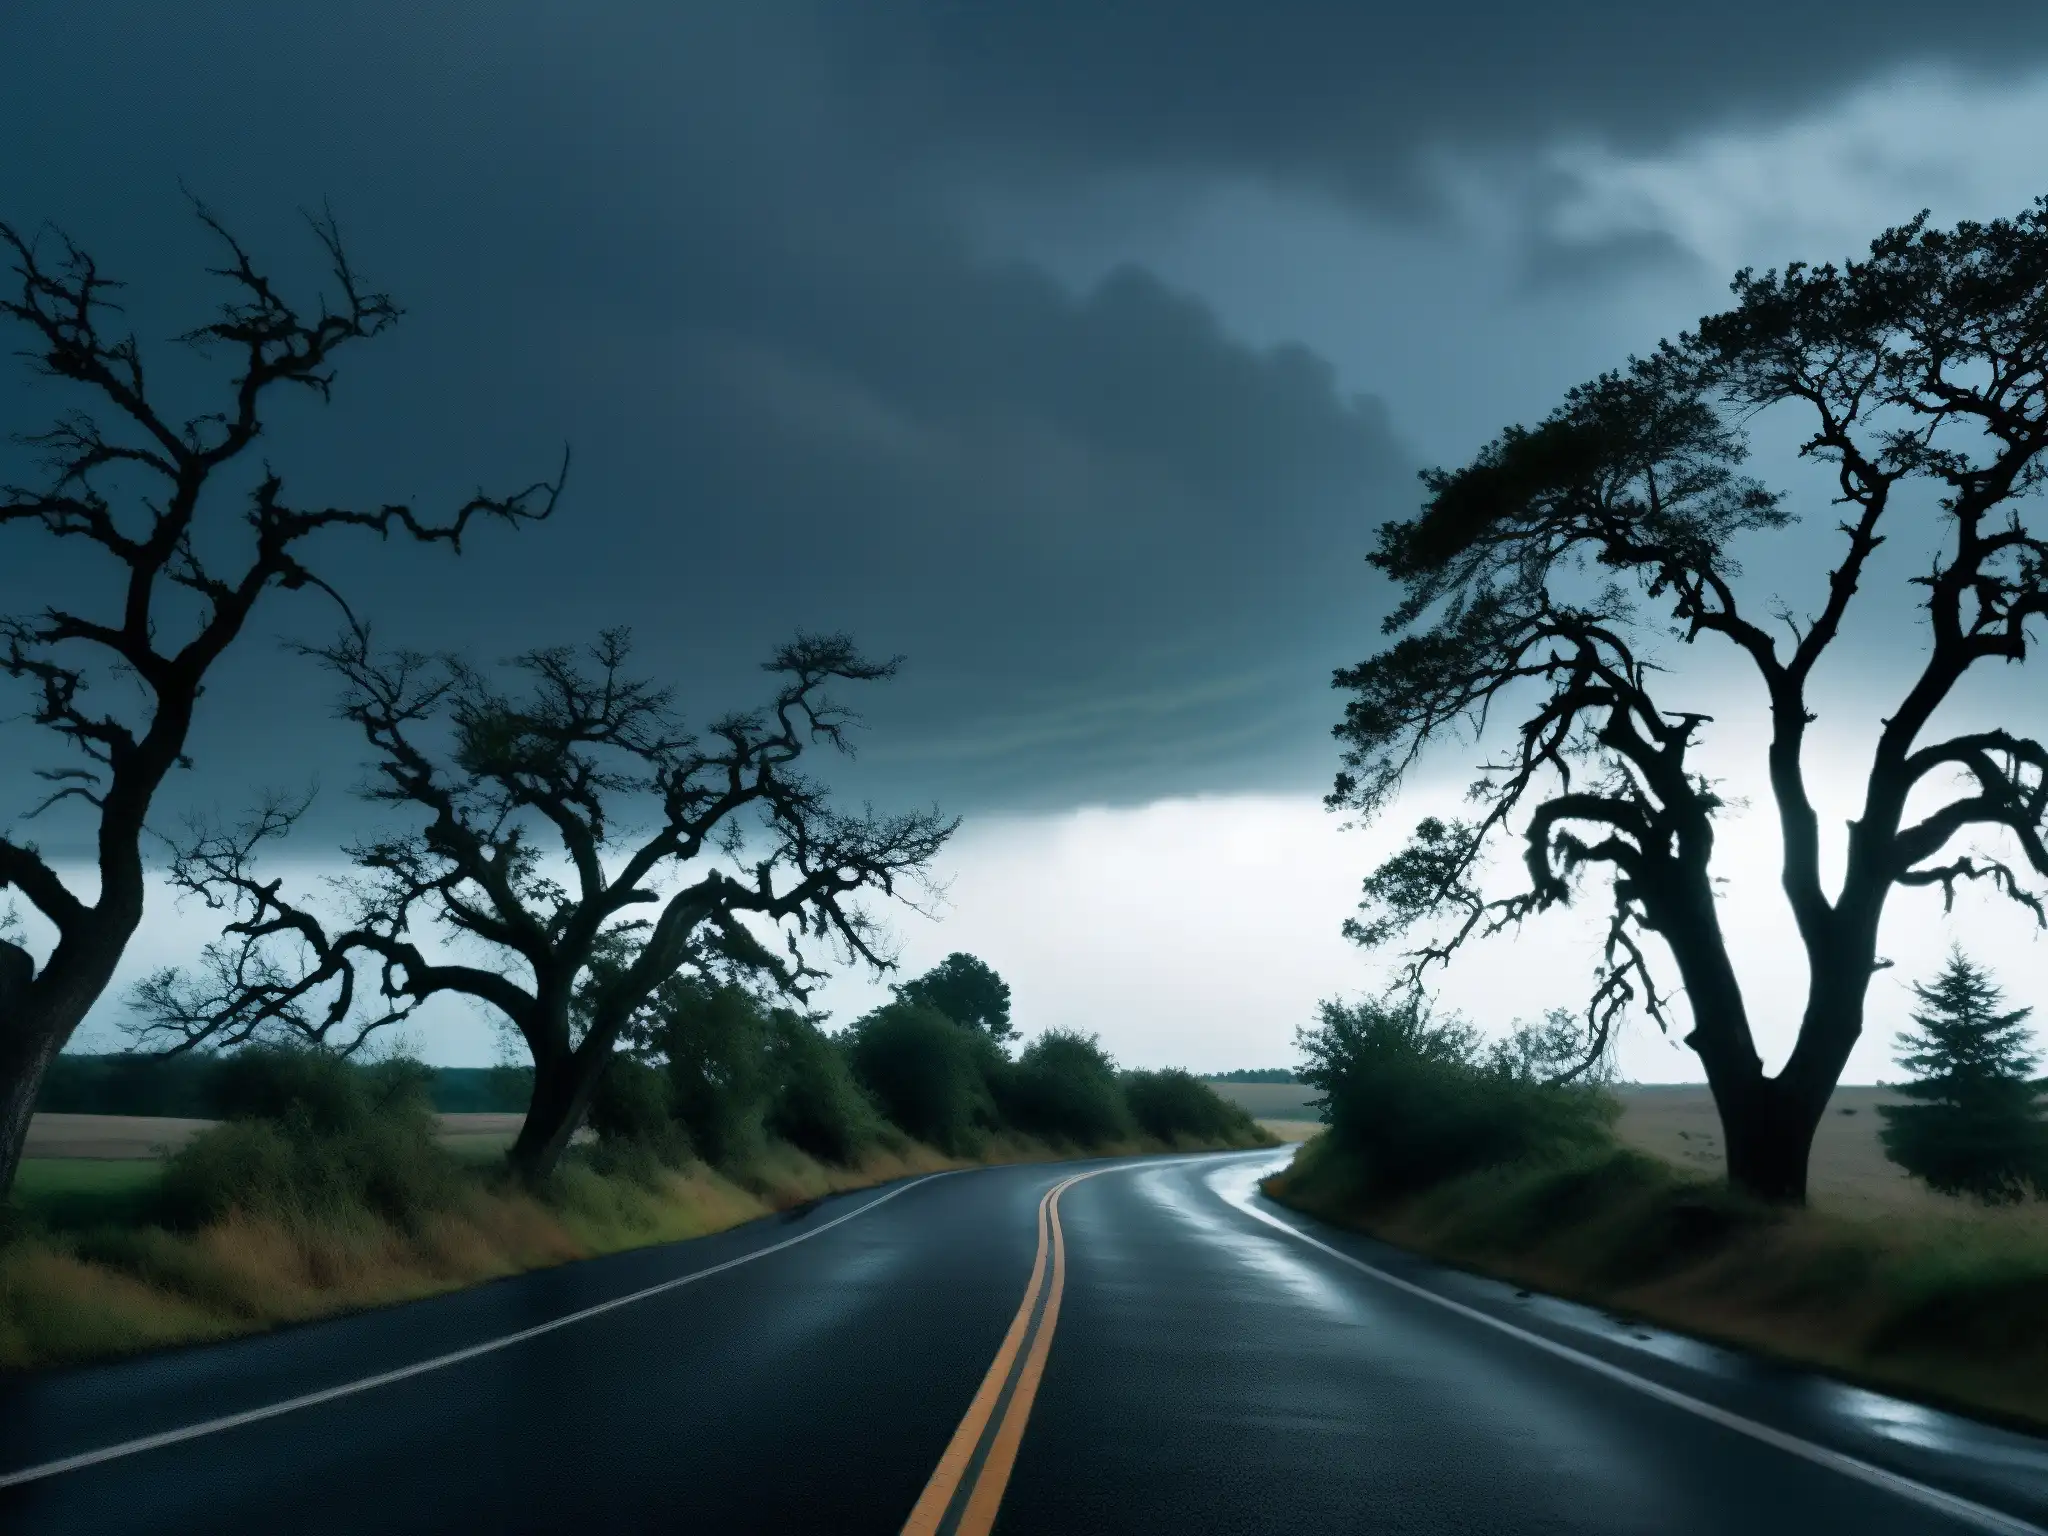 Una carretera maldita envuelta en misterio y leyendas urbanas, flanqueada por árboles retorcidos y un cielo amenazante